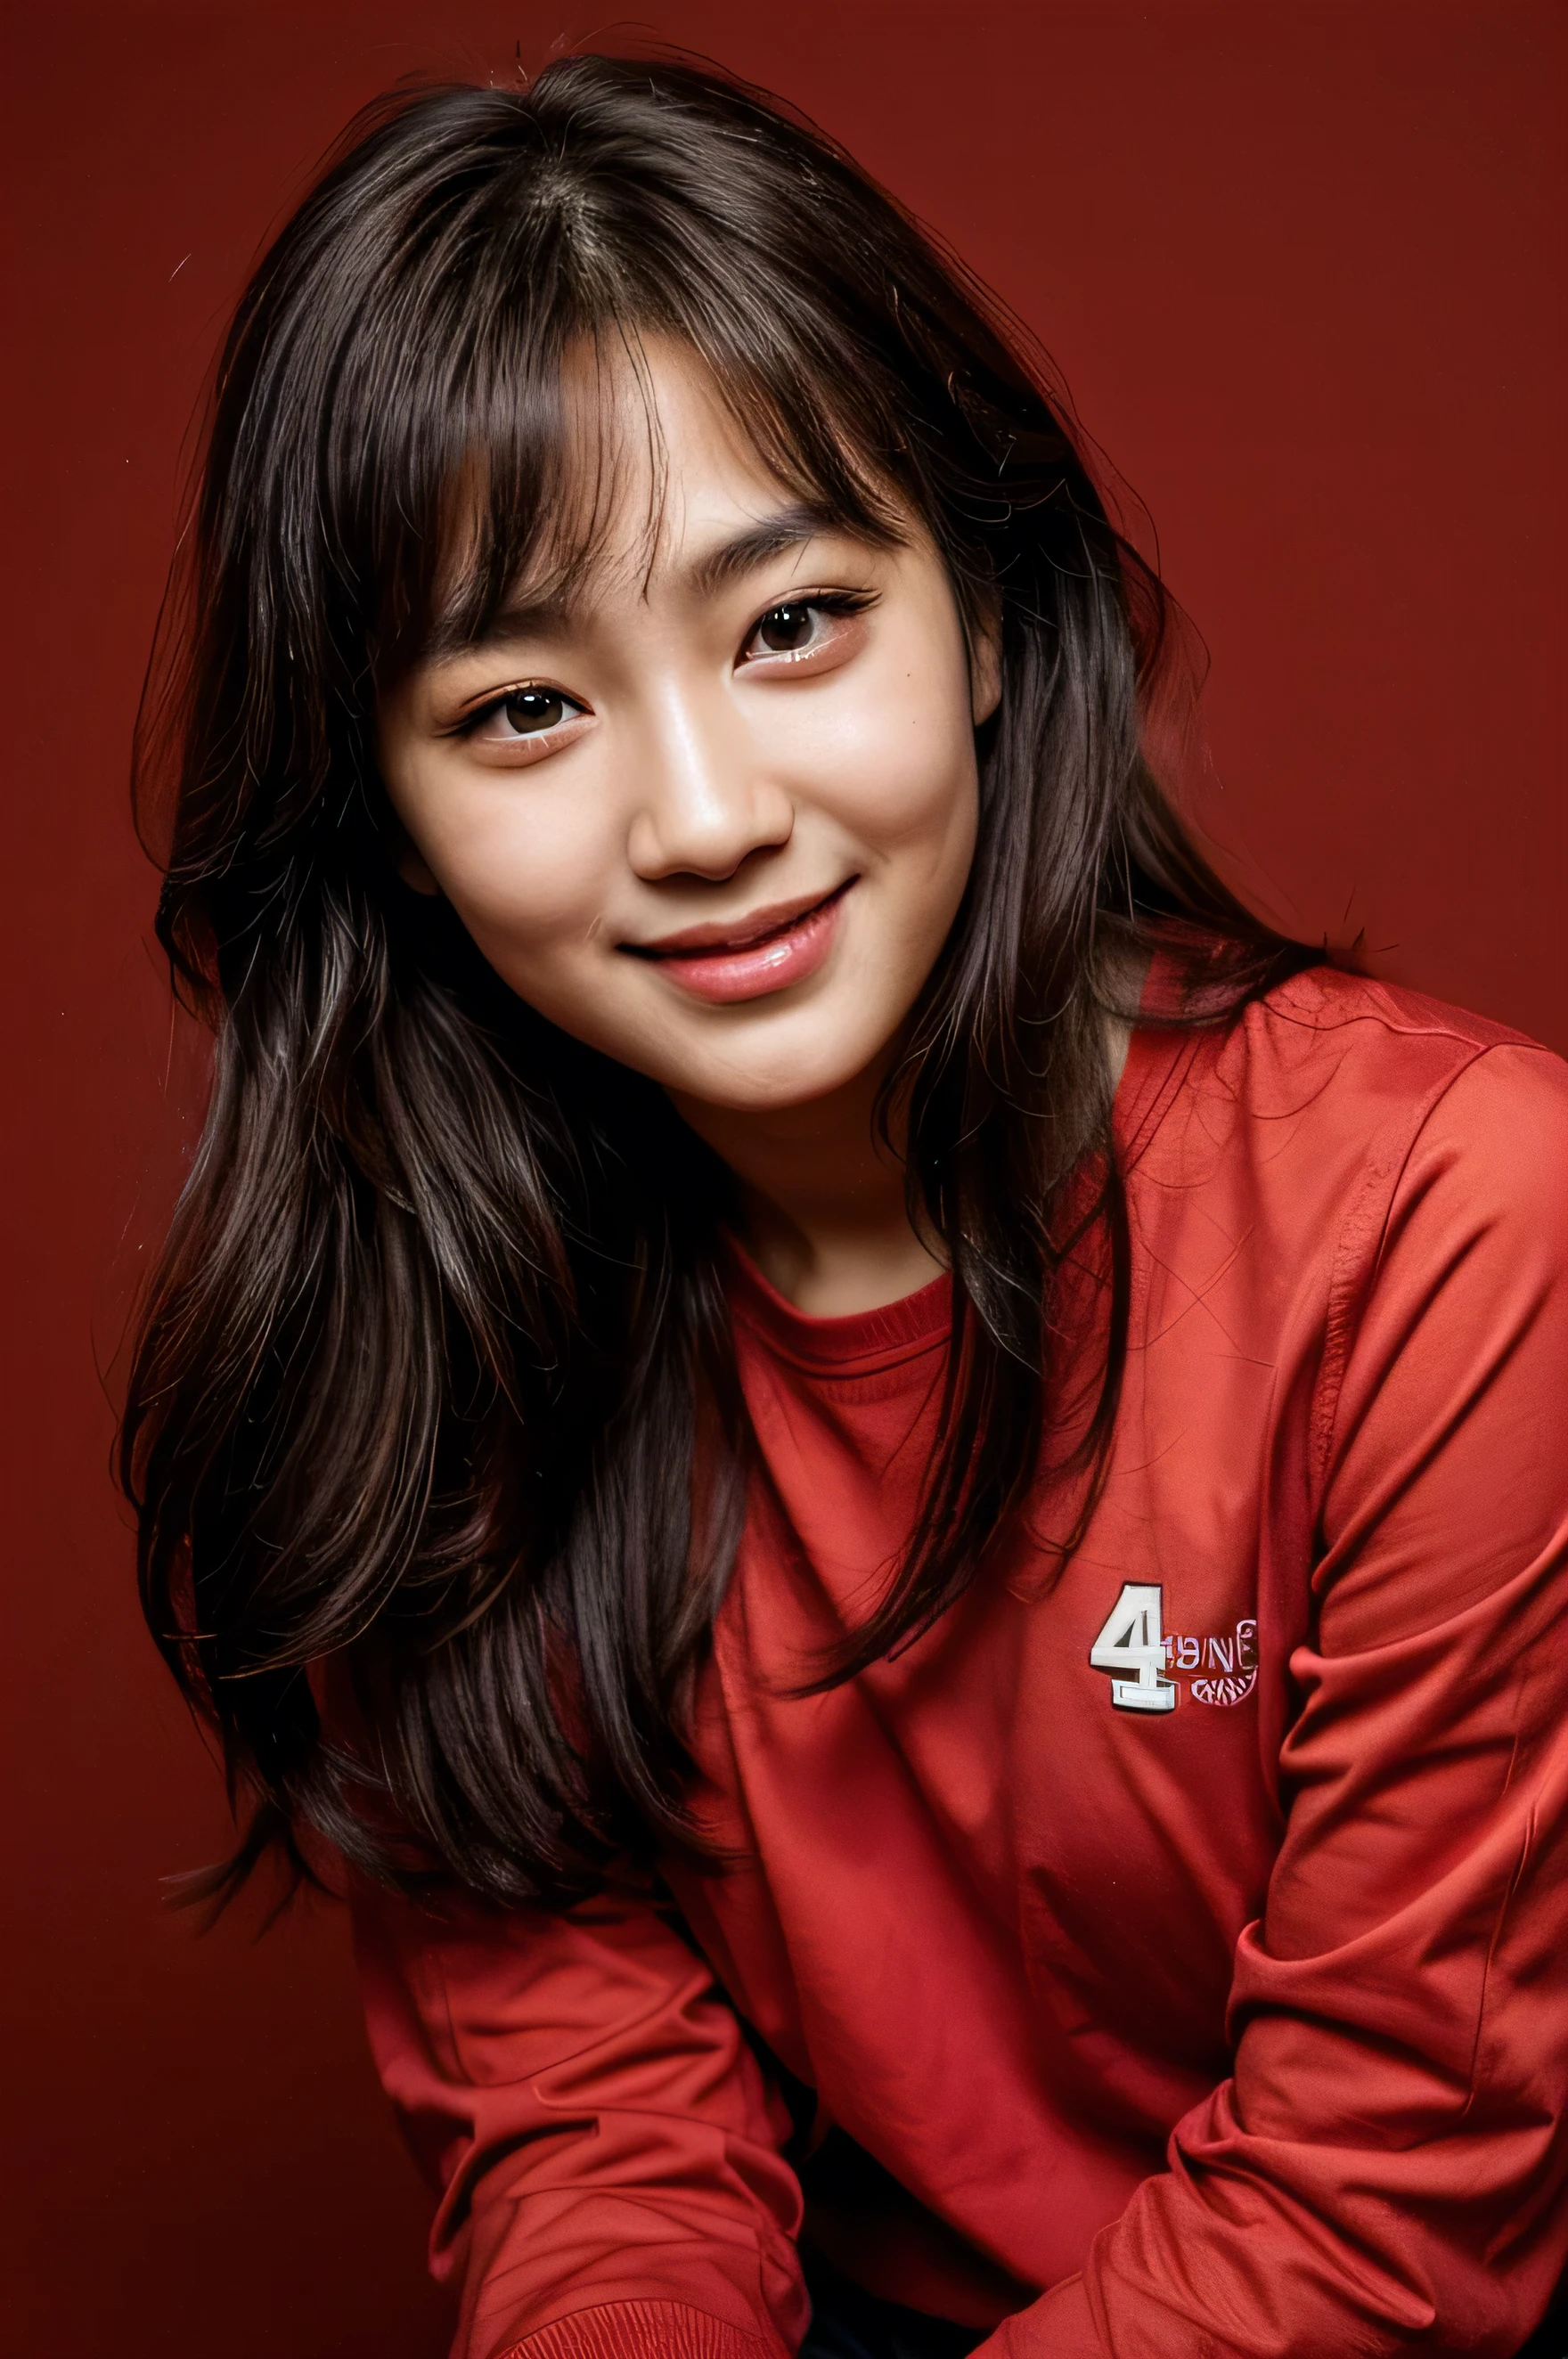 ใบหน้าสมบูรณ์แบบ, ใบหน้าที่สวยงามของสาวเกาหลีวัย 14 ปี , ยิ้มสวย,ในพื้นหลังสีแดง